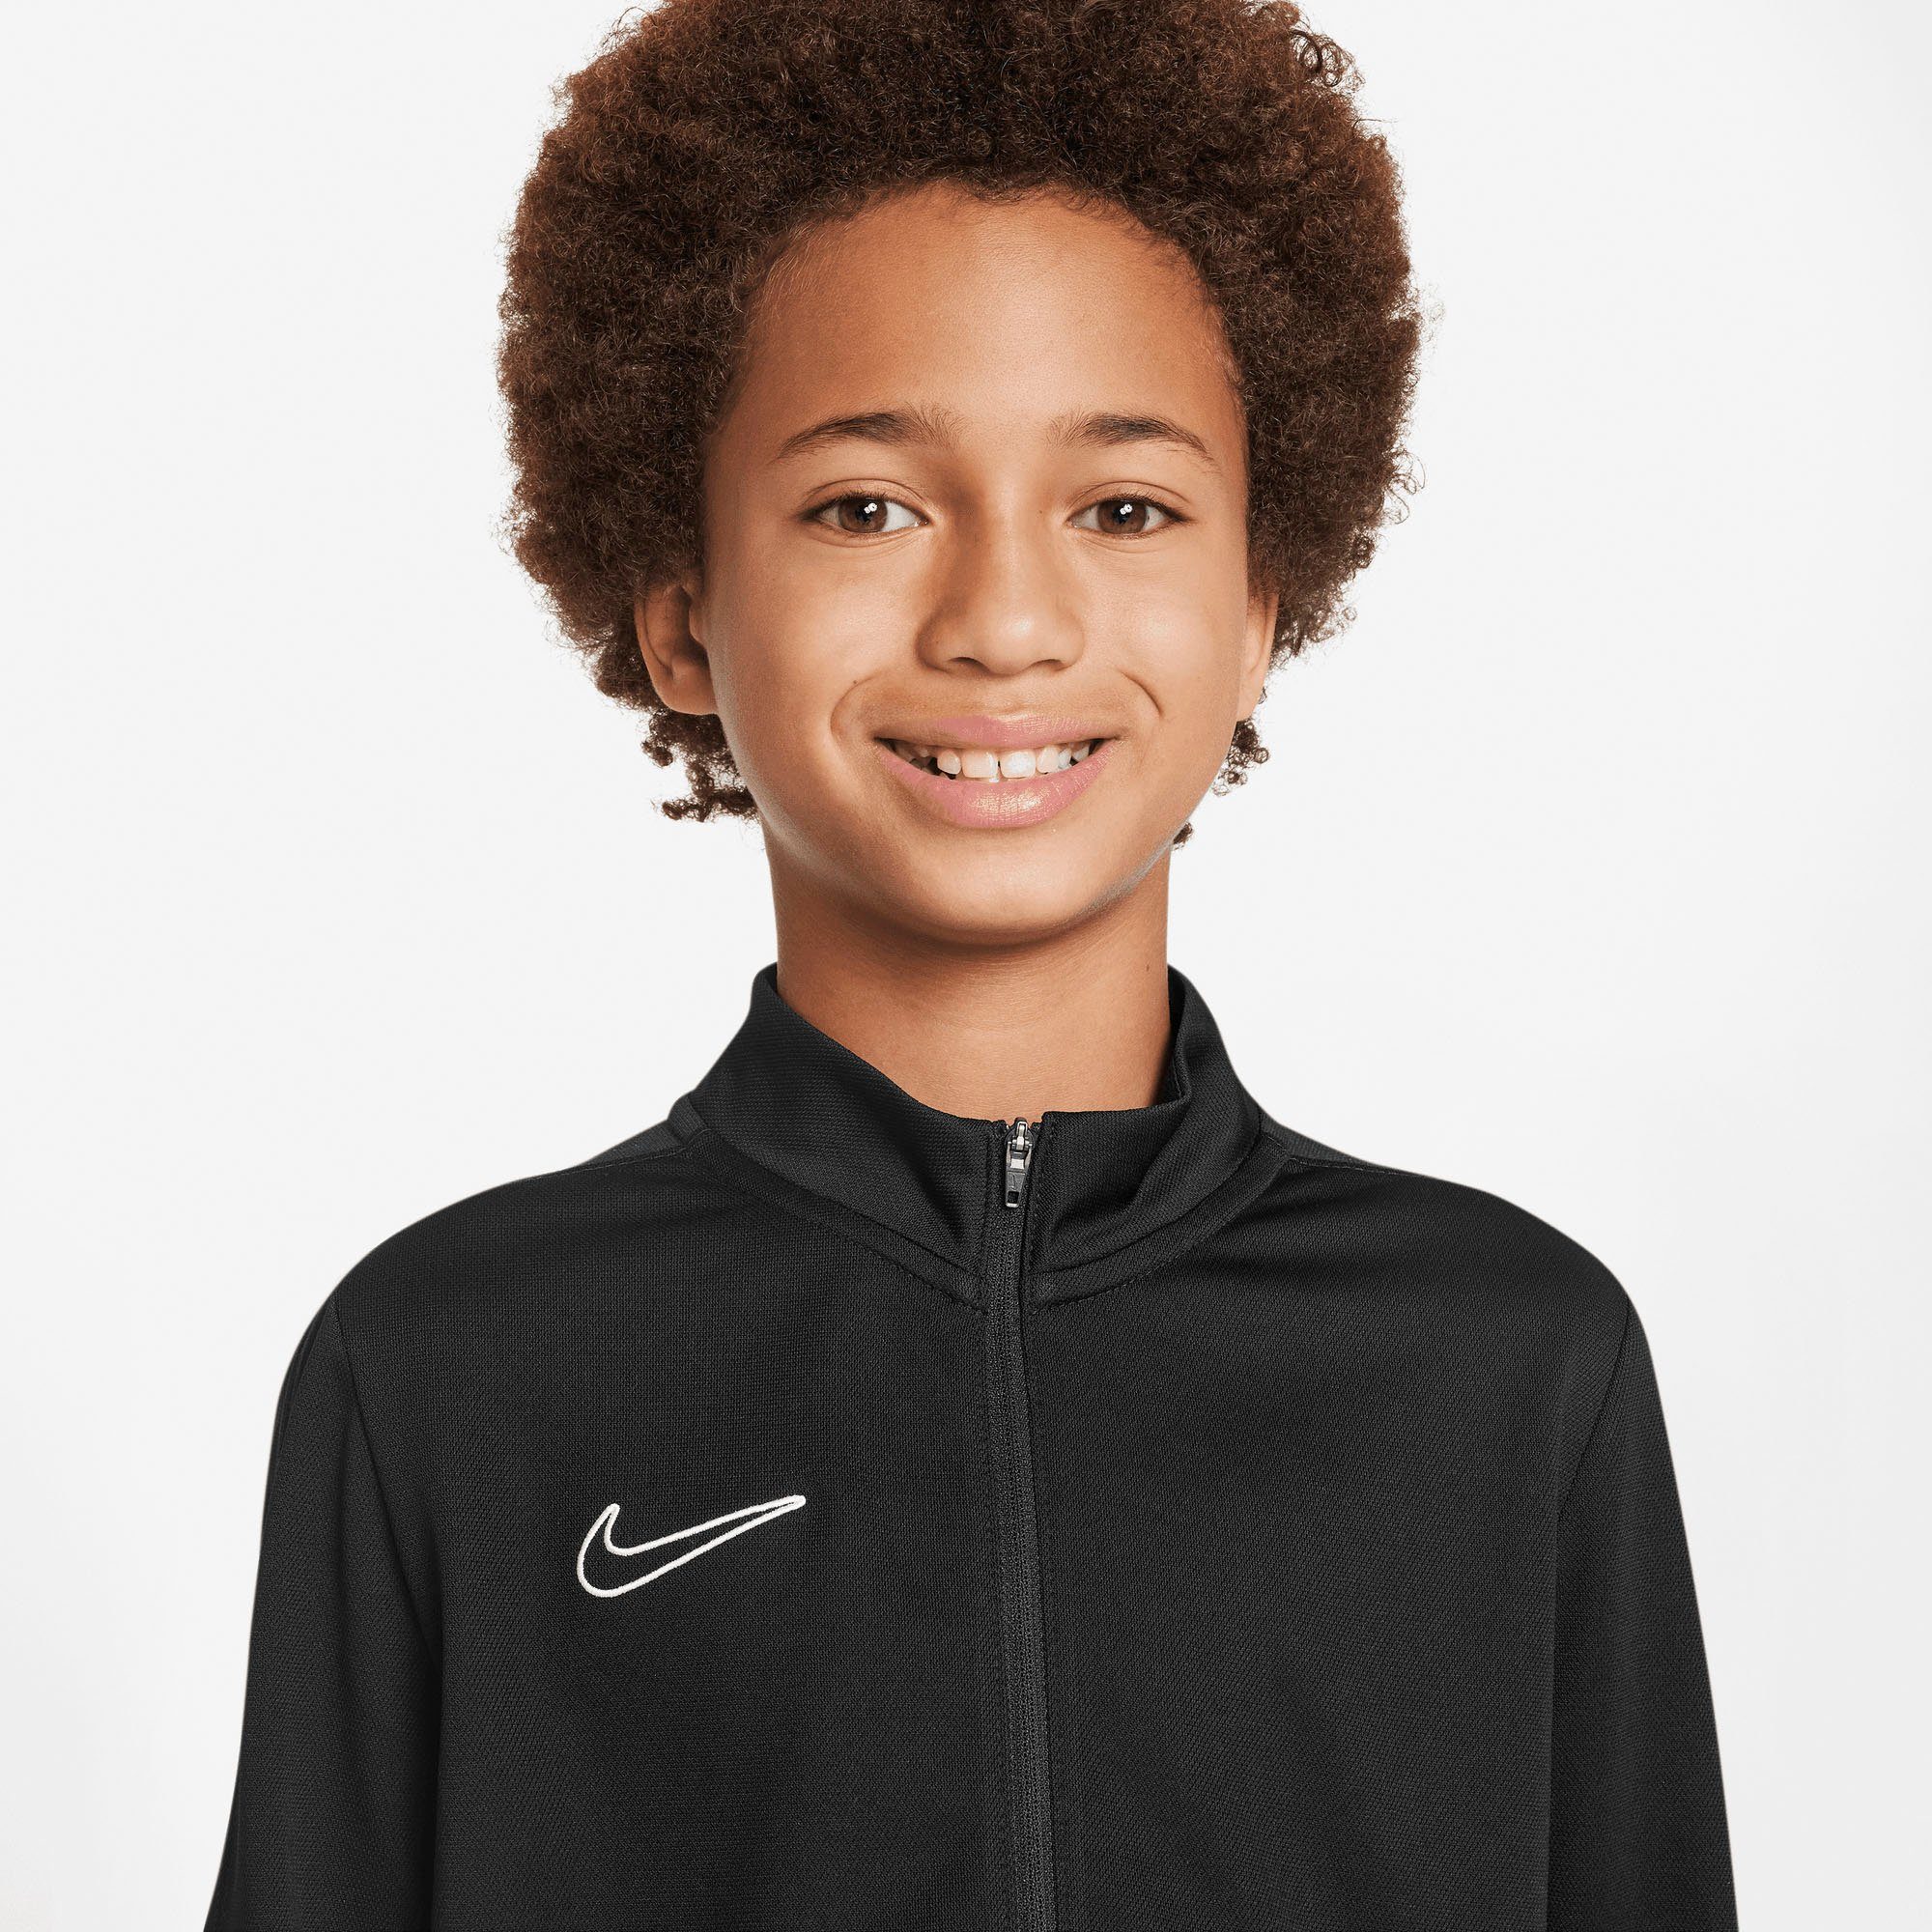 DF Kinder TRK schwarzschwarzweiss BR NK Trainingsanzug für SUIT Nike K K - ACD